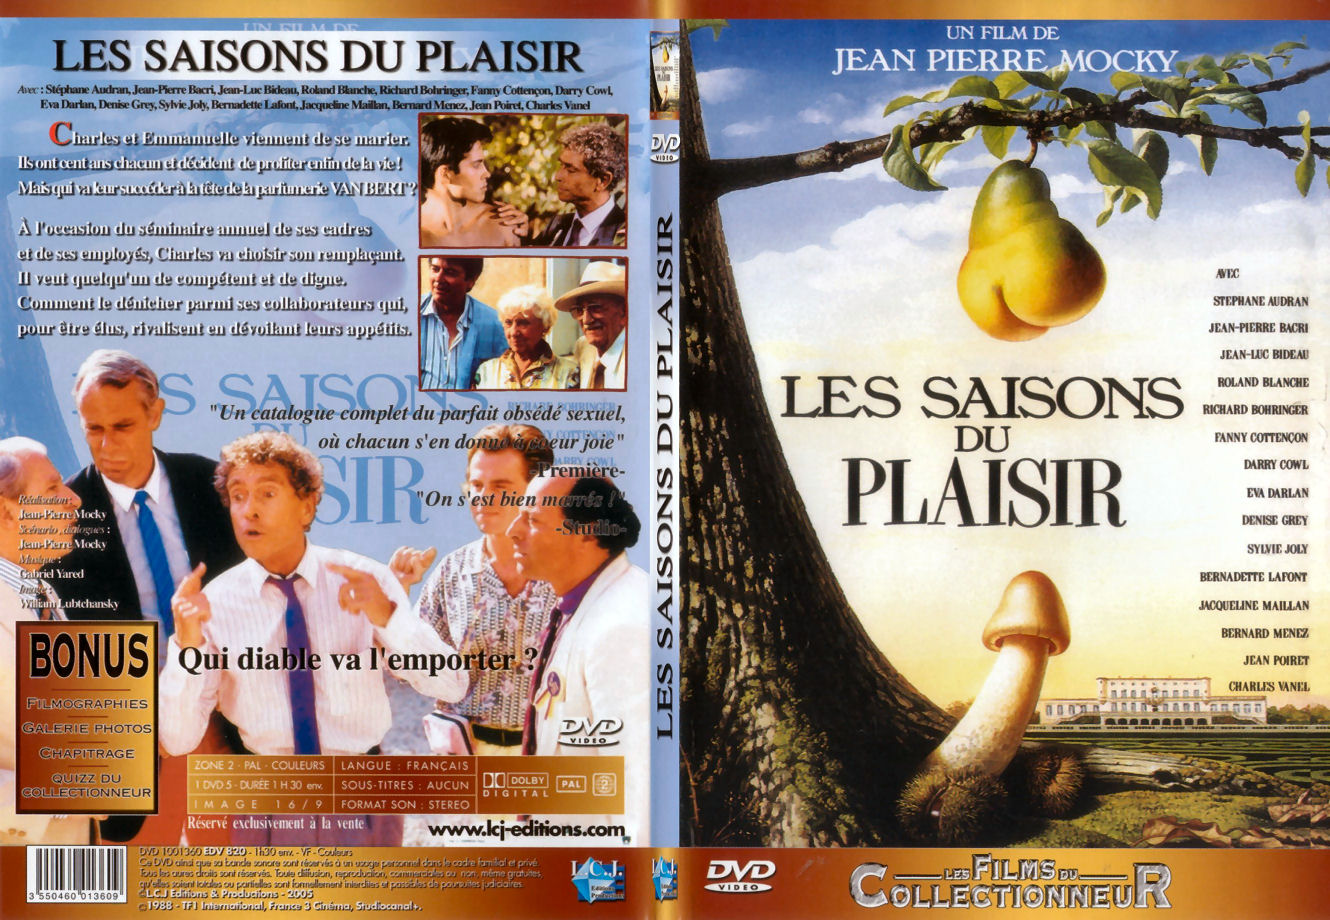 Jaquette DVD de Les saisons du plaisir - SLIM - Cinéma Passion